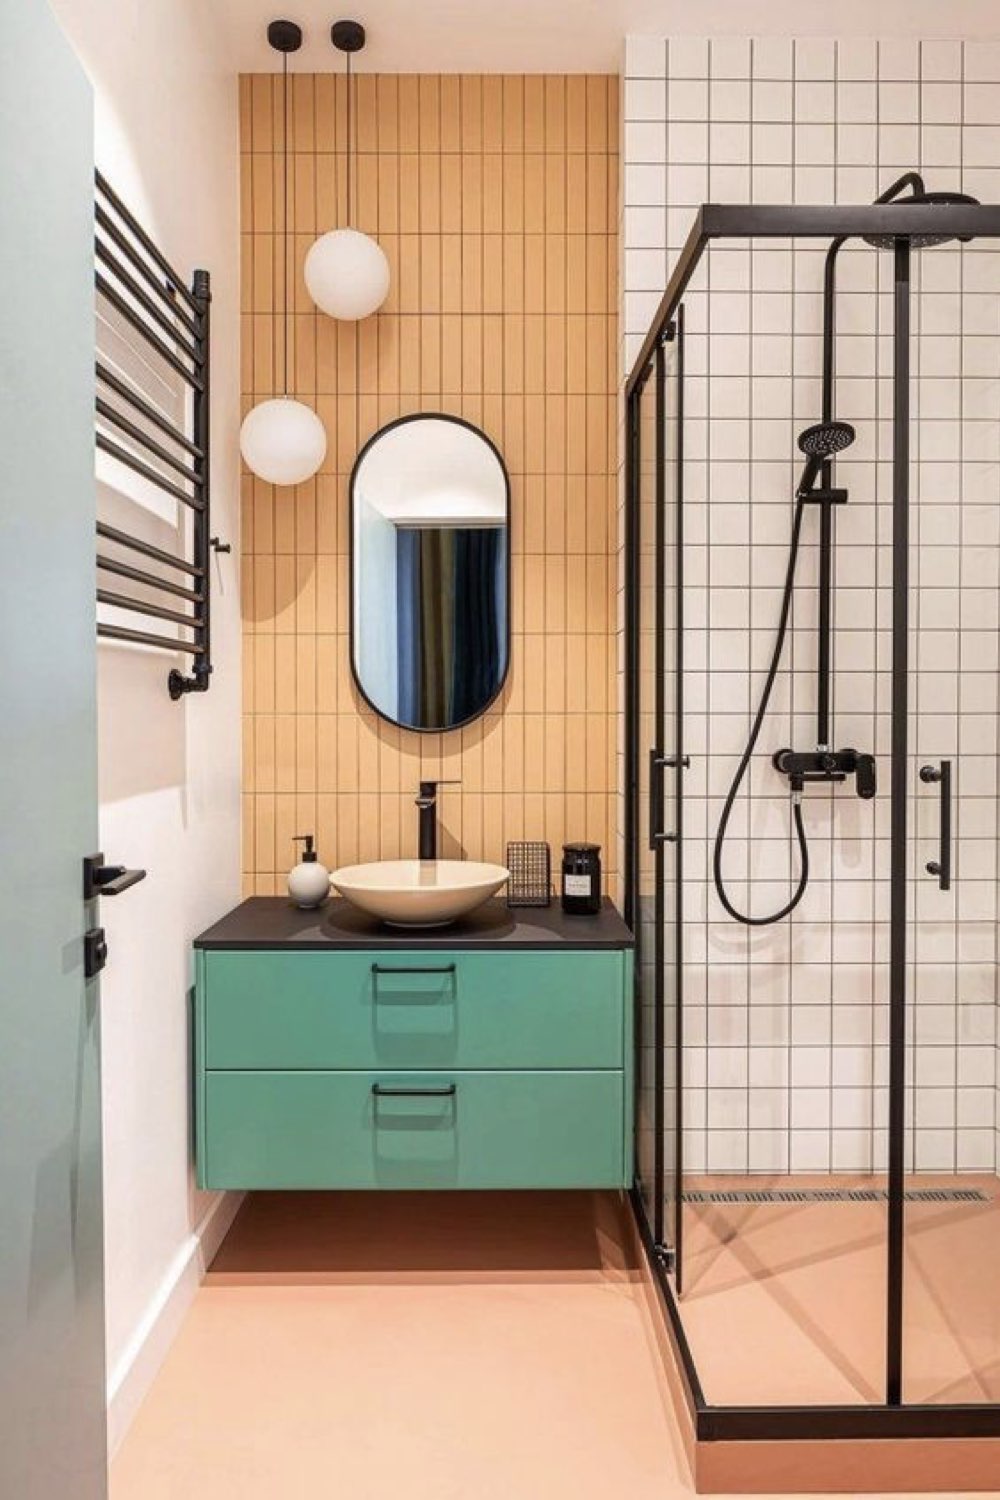 reussir deco salle de bain moderne couleur acidulée orange vert corail carrelage blanc douche encadrement noir original miroir arrondi oblongue